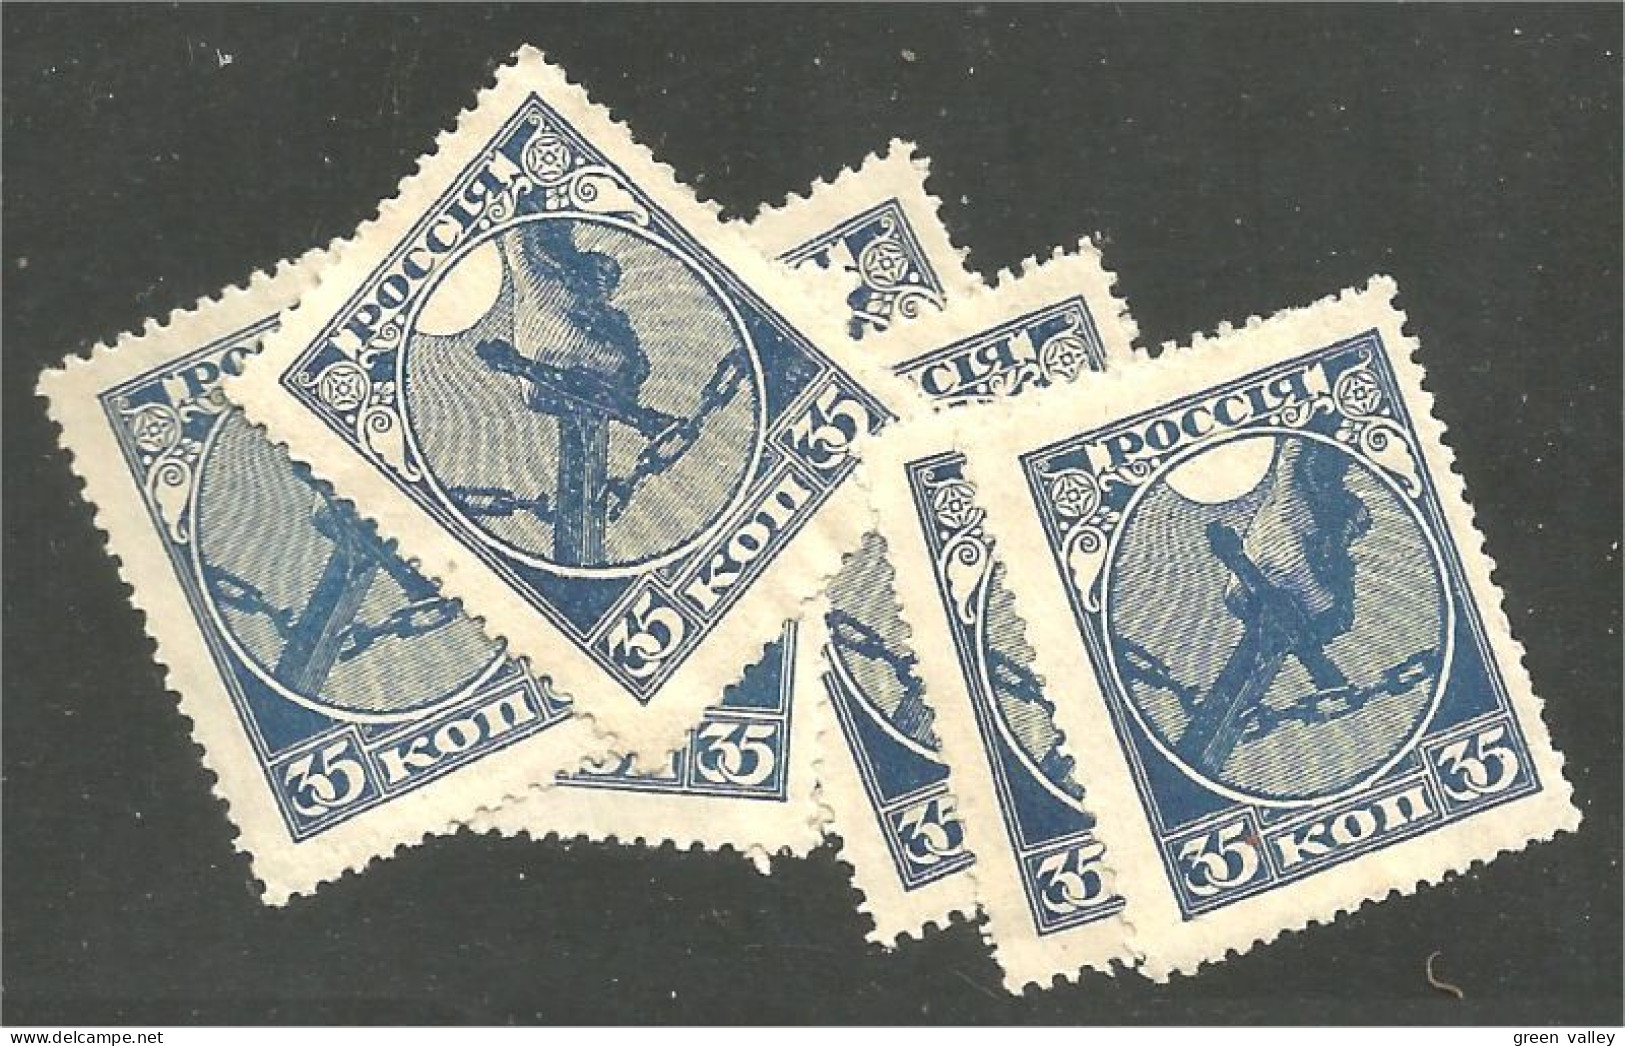 771 Russie 35k Blue Bleu 1918 7 Stamps For Study Chaines Brisées Severing Chains Bondage No Gum Sans Gomme (RUZ-378) - Oblitérés